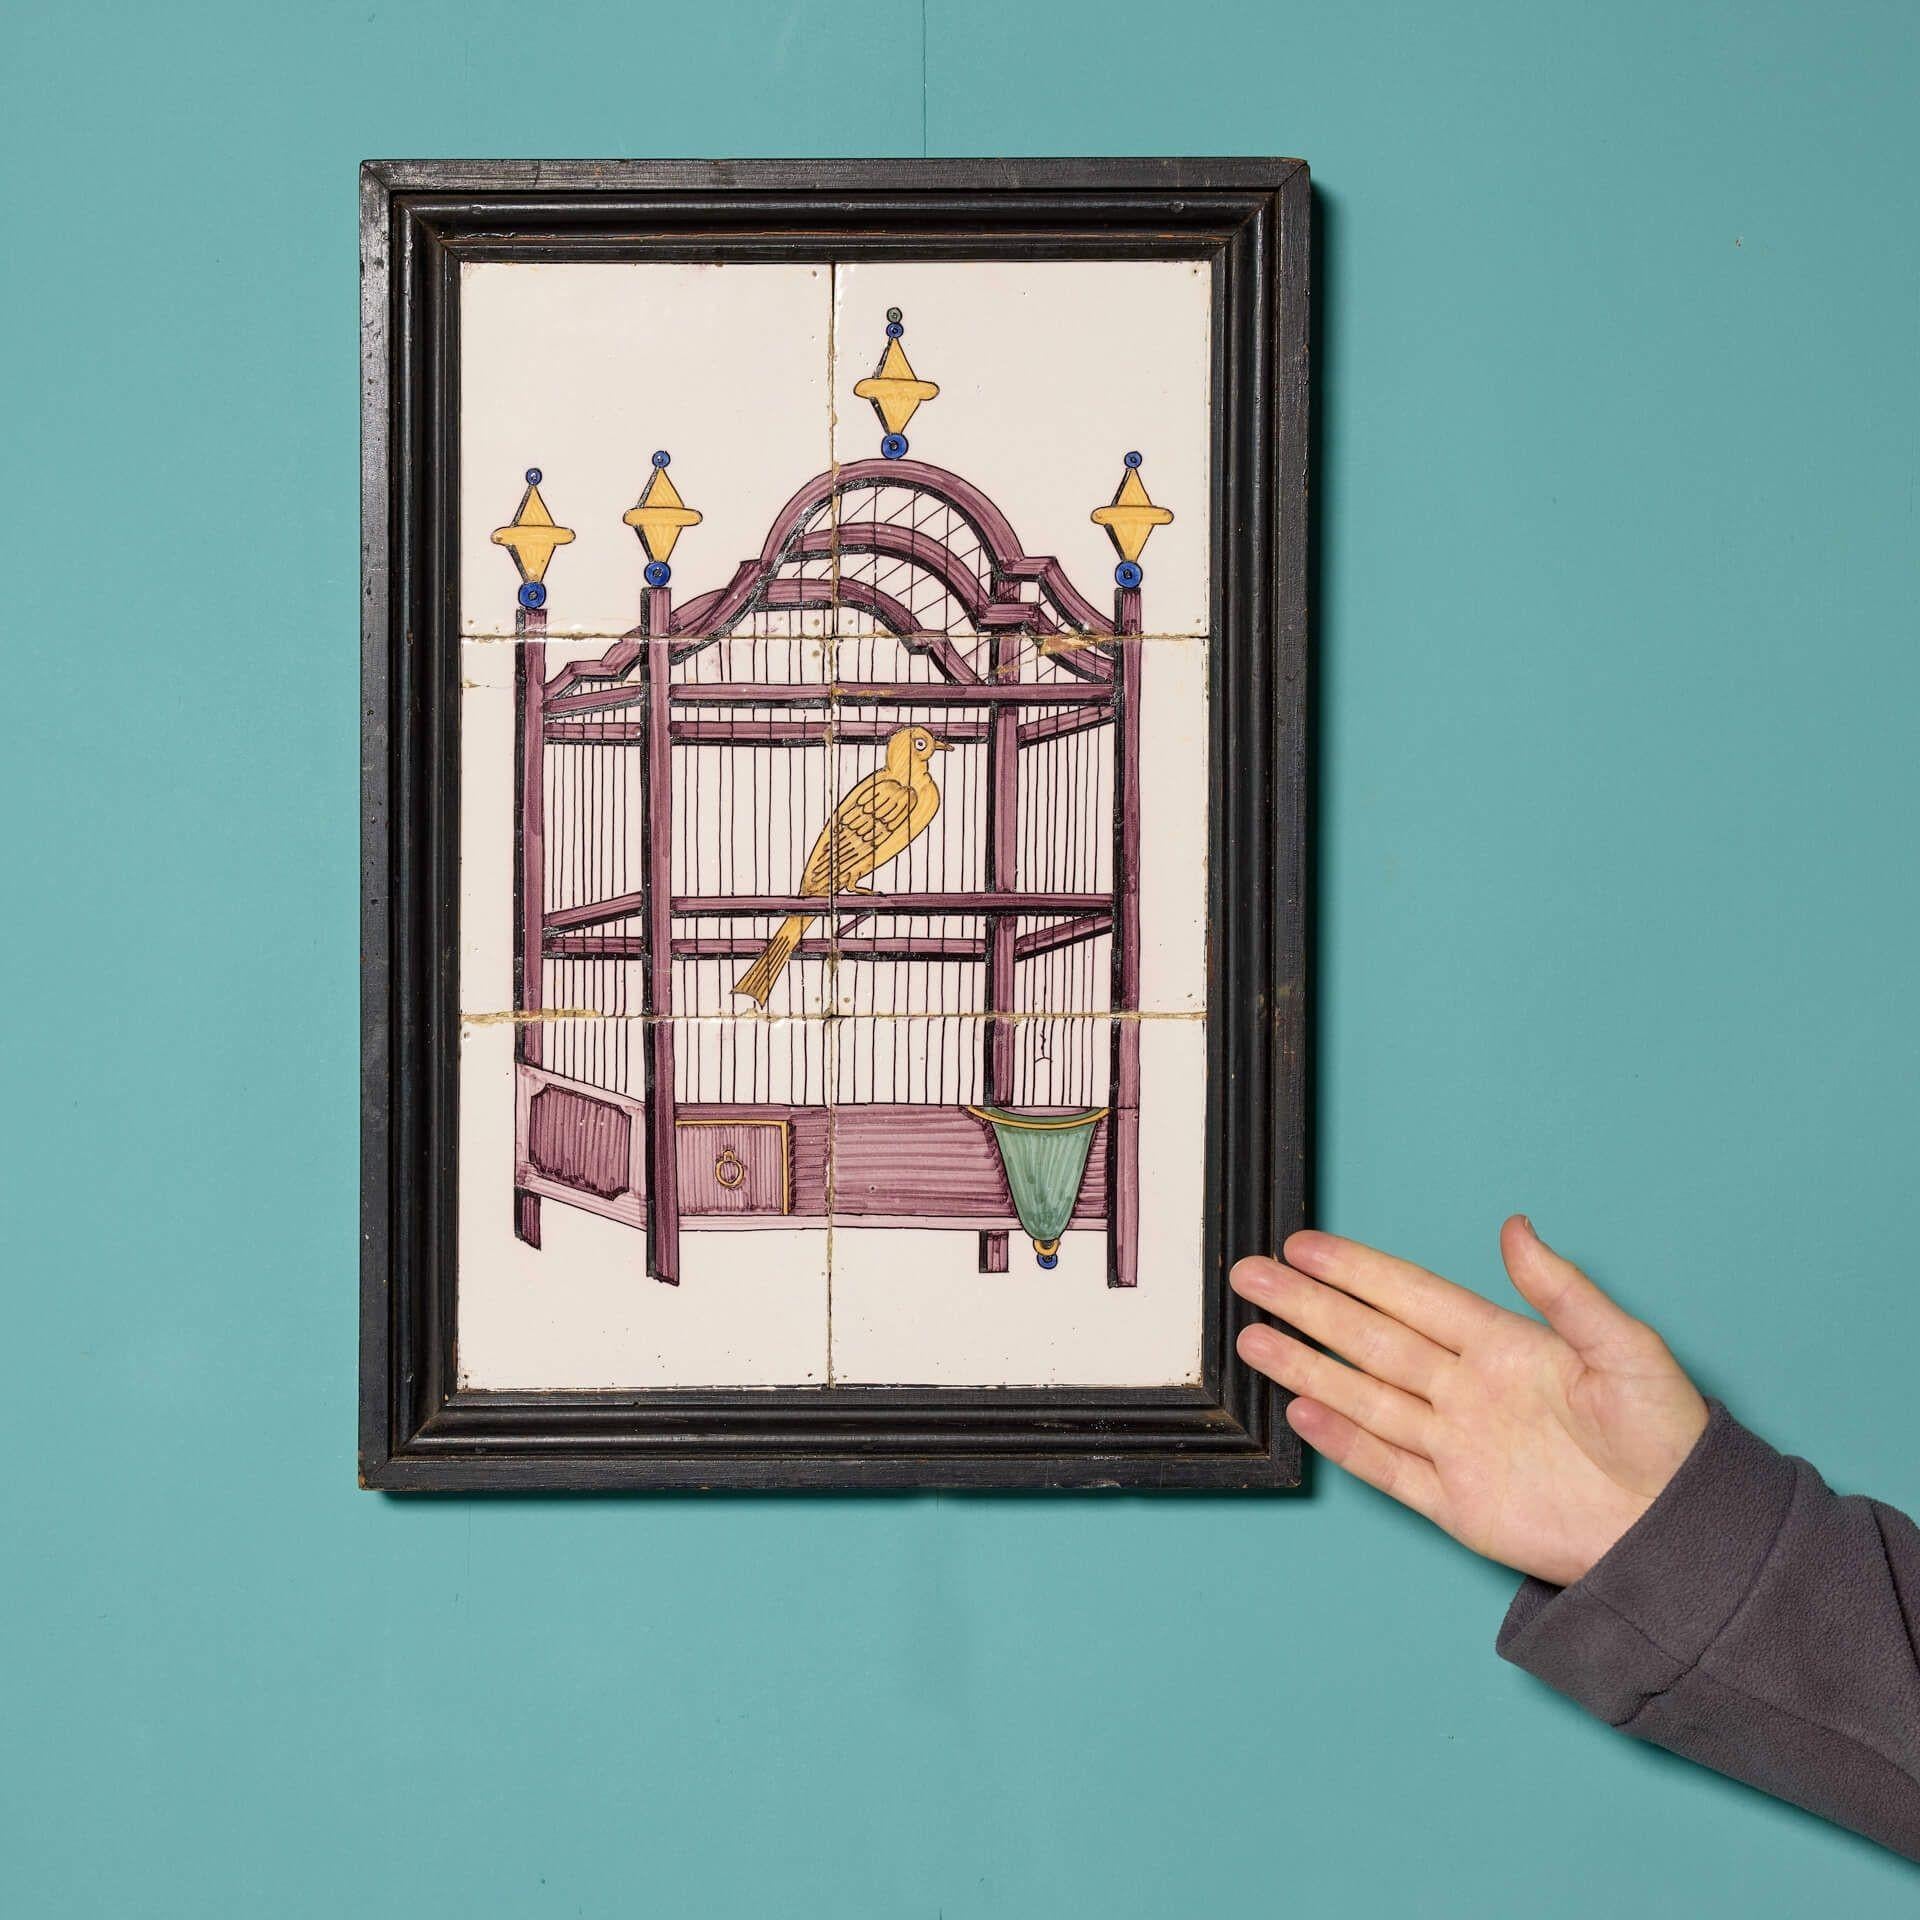 Ce panneau antique encadré représentant un oiseau dans une cage décorative, provenant de la succession de Dame Barbara Mary Quant, est une véritable trouvaille. Présentés dans un cadre, les carreaux constituent une belle œuvre d'art, qui sera